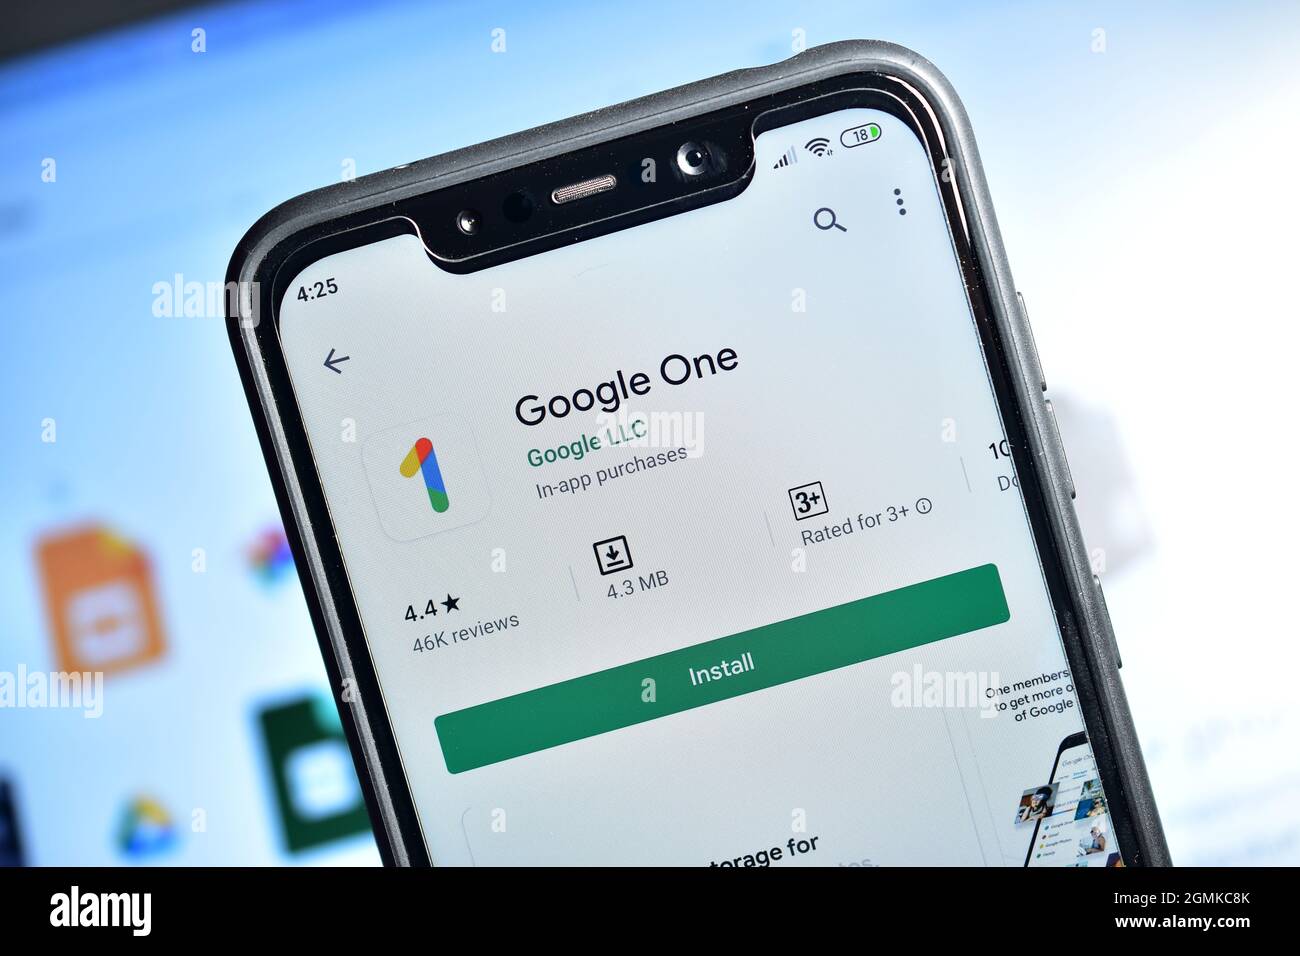 New Delhi, India - 10 febbraio 2020: Google One utilizzato per aumentare lo storage cloud e dispositivo di backup automaticamente, Google One applicazione su smartphone Foto Stock